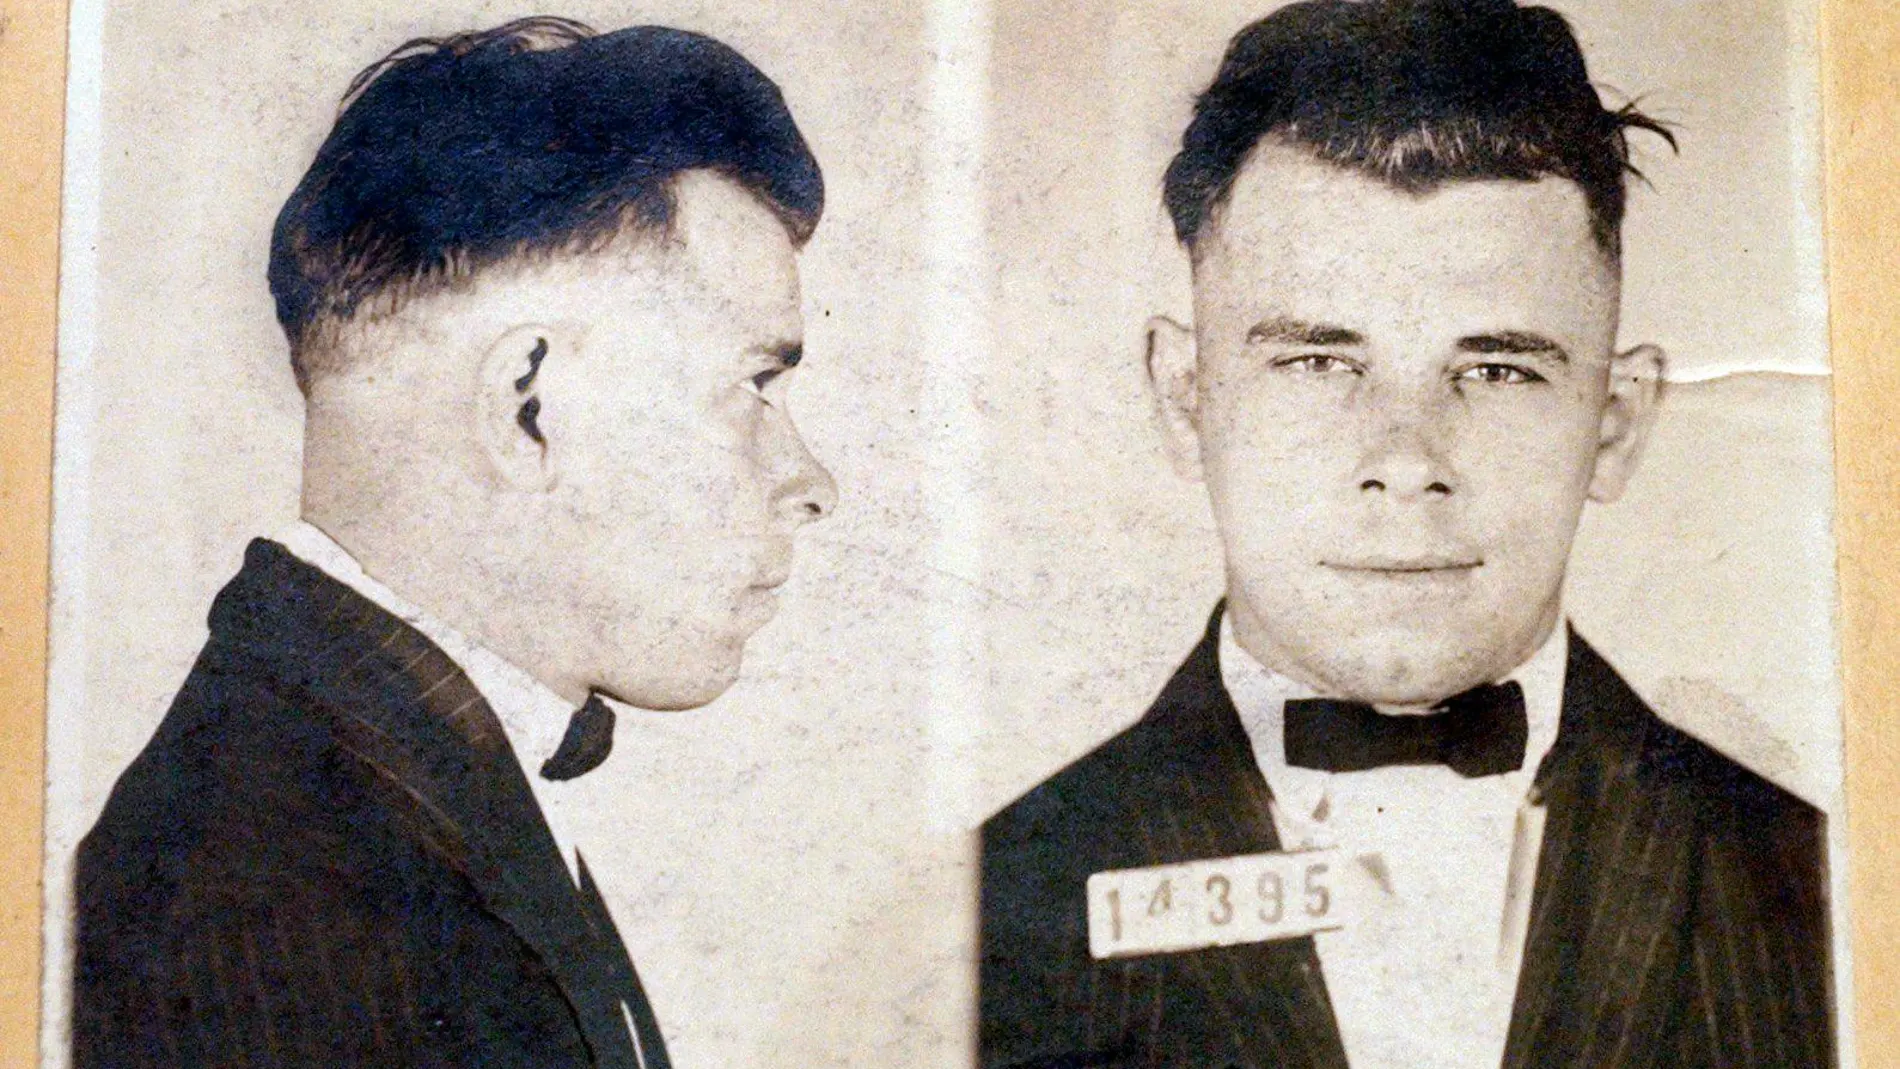 Imagen de la ficha policial de John Dillinger